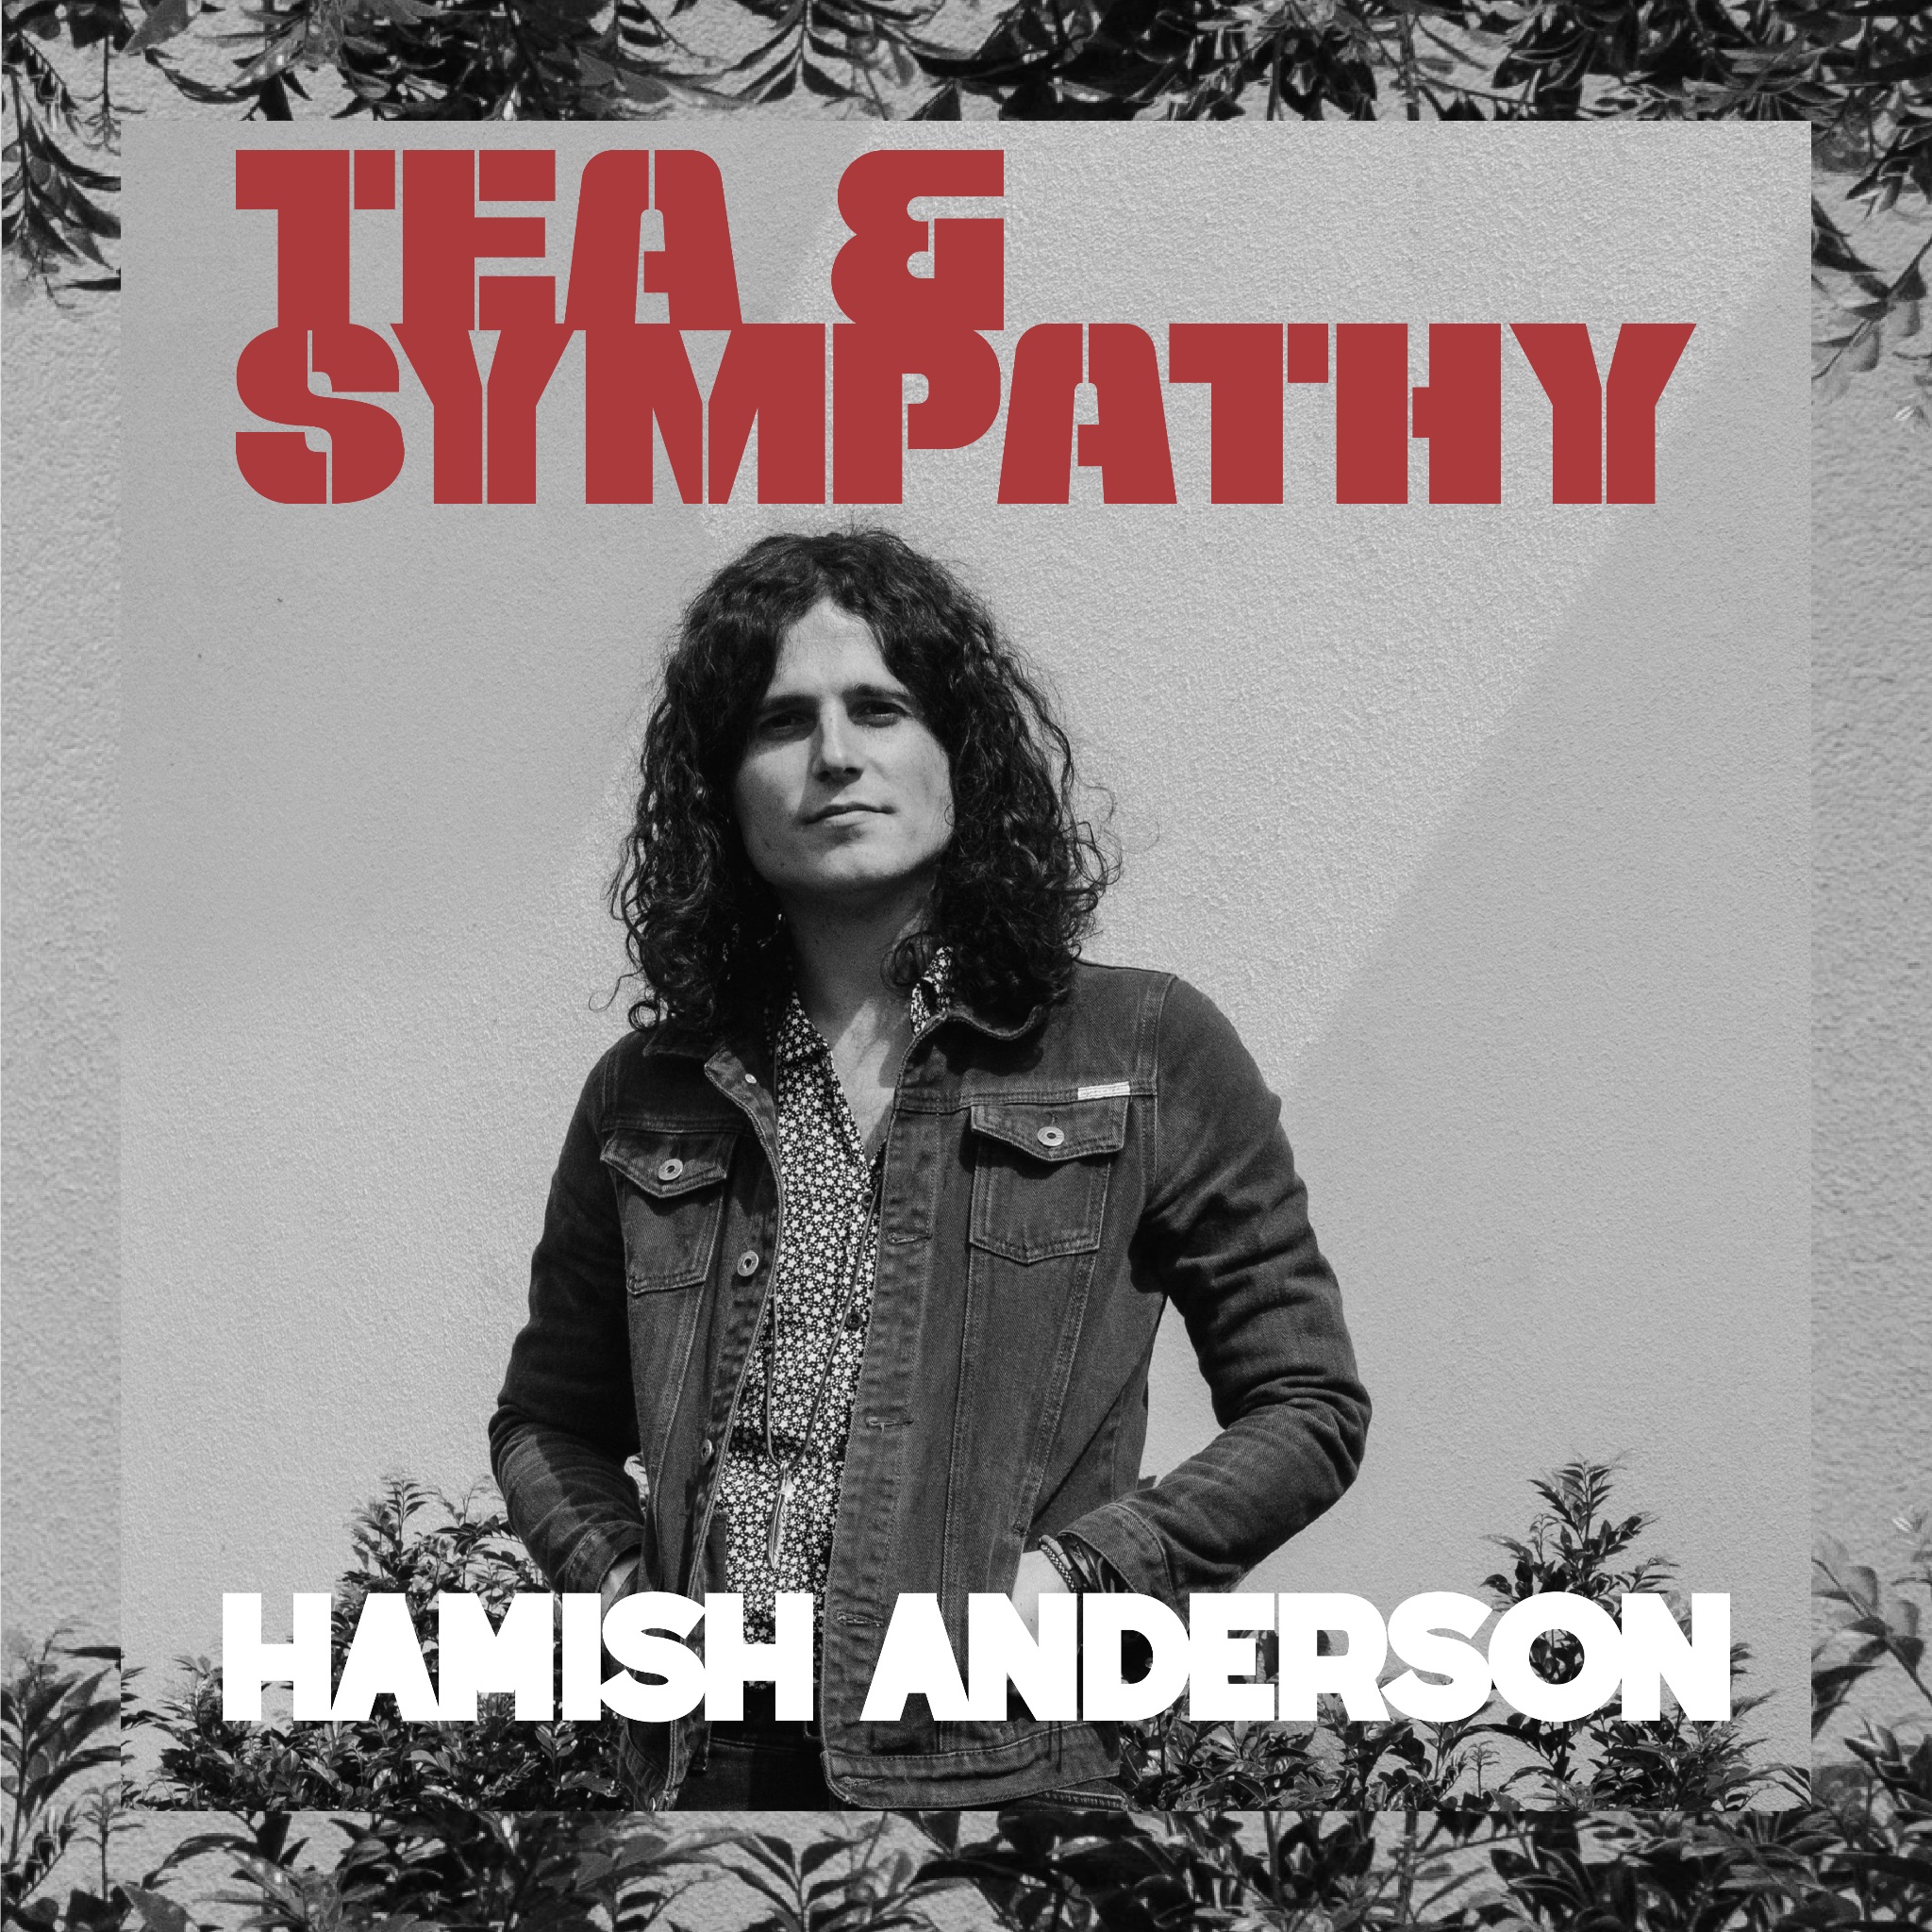 HAMISH ANDERSON DROPS NEW SINGLE “TEA & SYMPATHY”